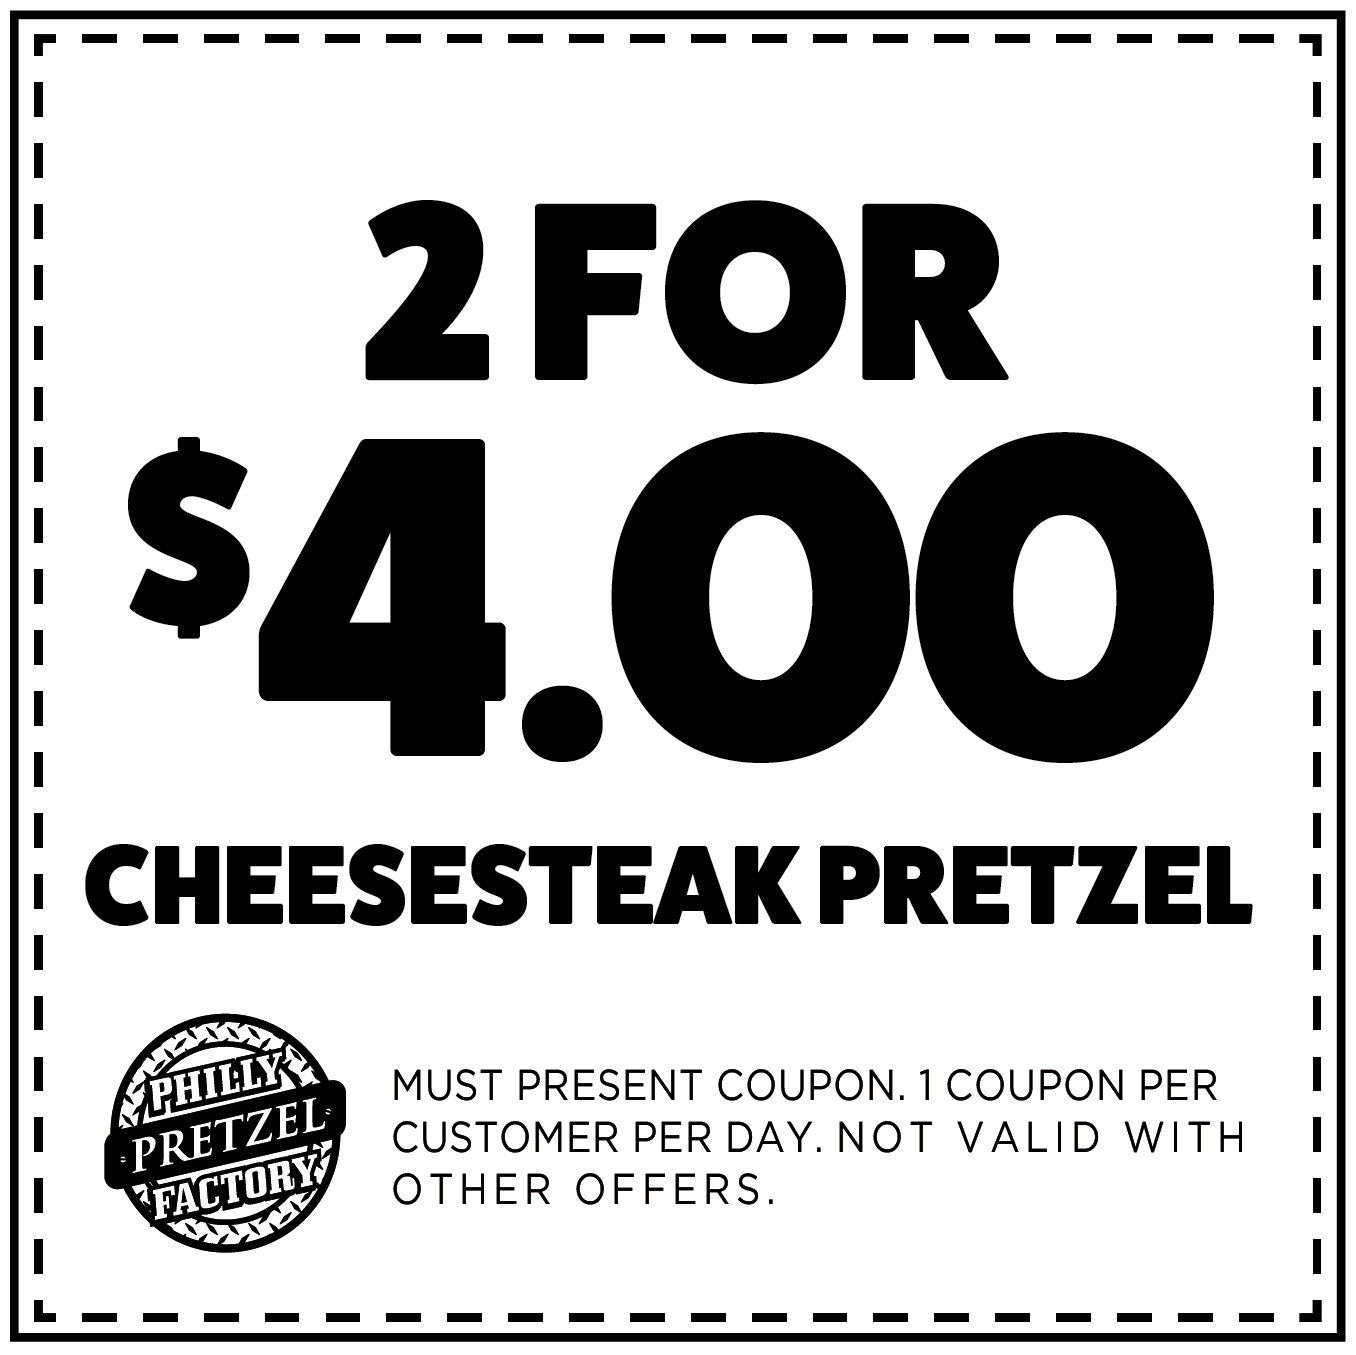 2 for $4 Cheesesteak Pretzel